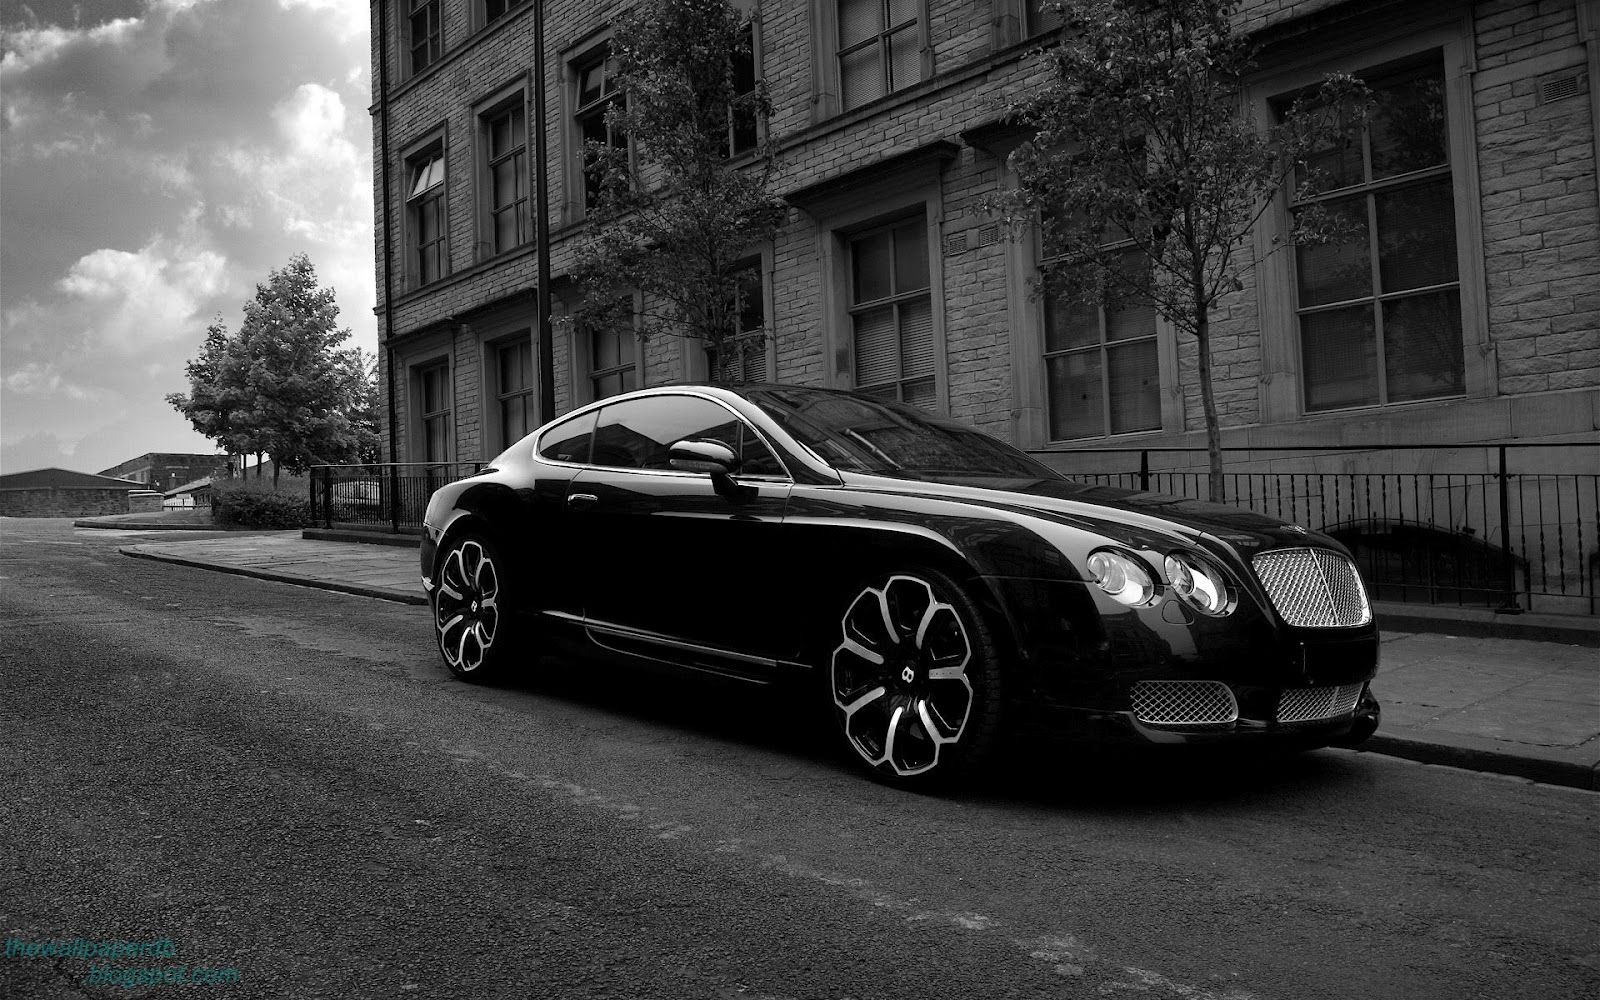 Black Bentley Continental GT v12 wallpaper. Home of Wallpaper. Free download HD wallpaper